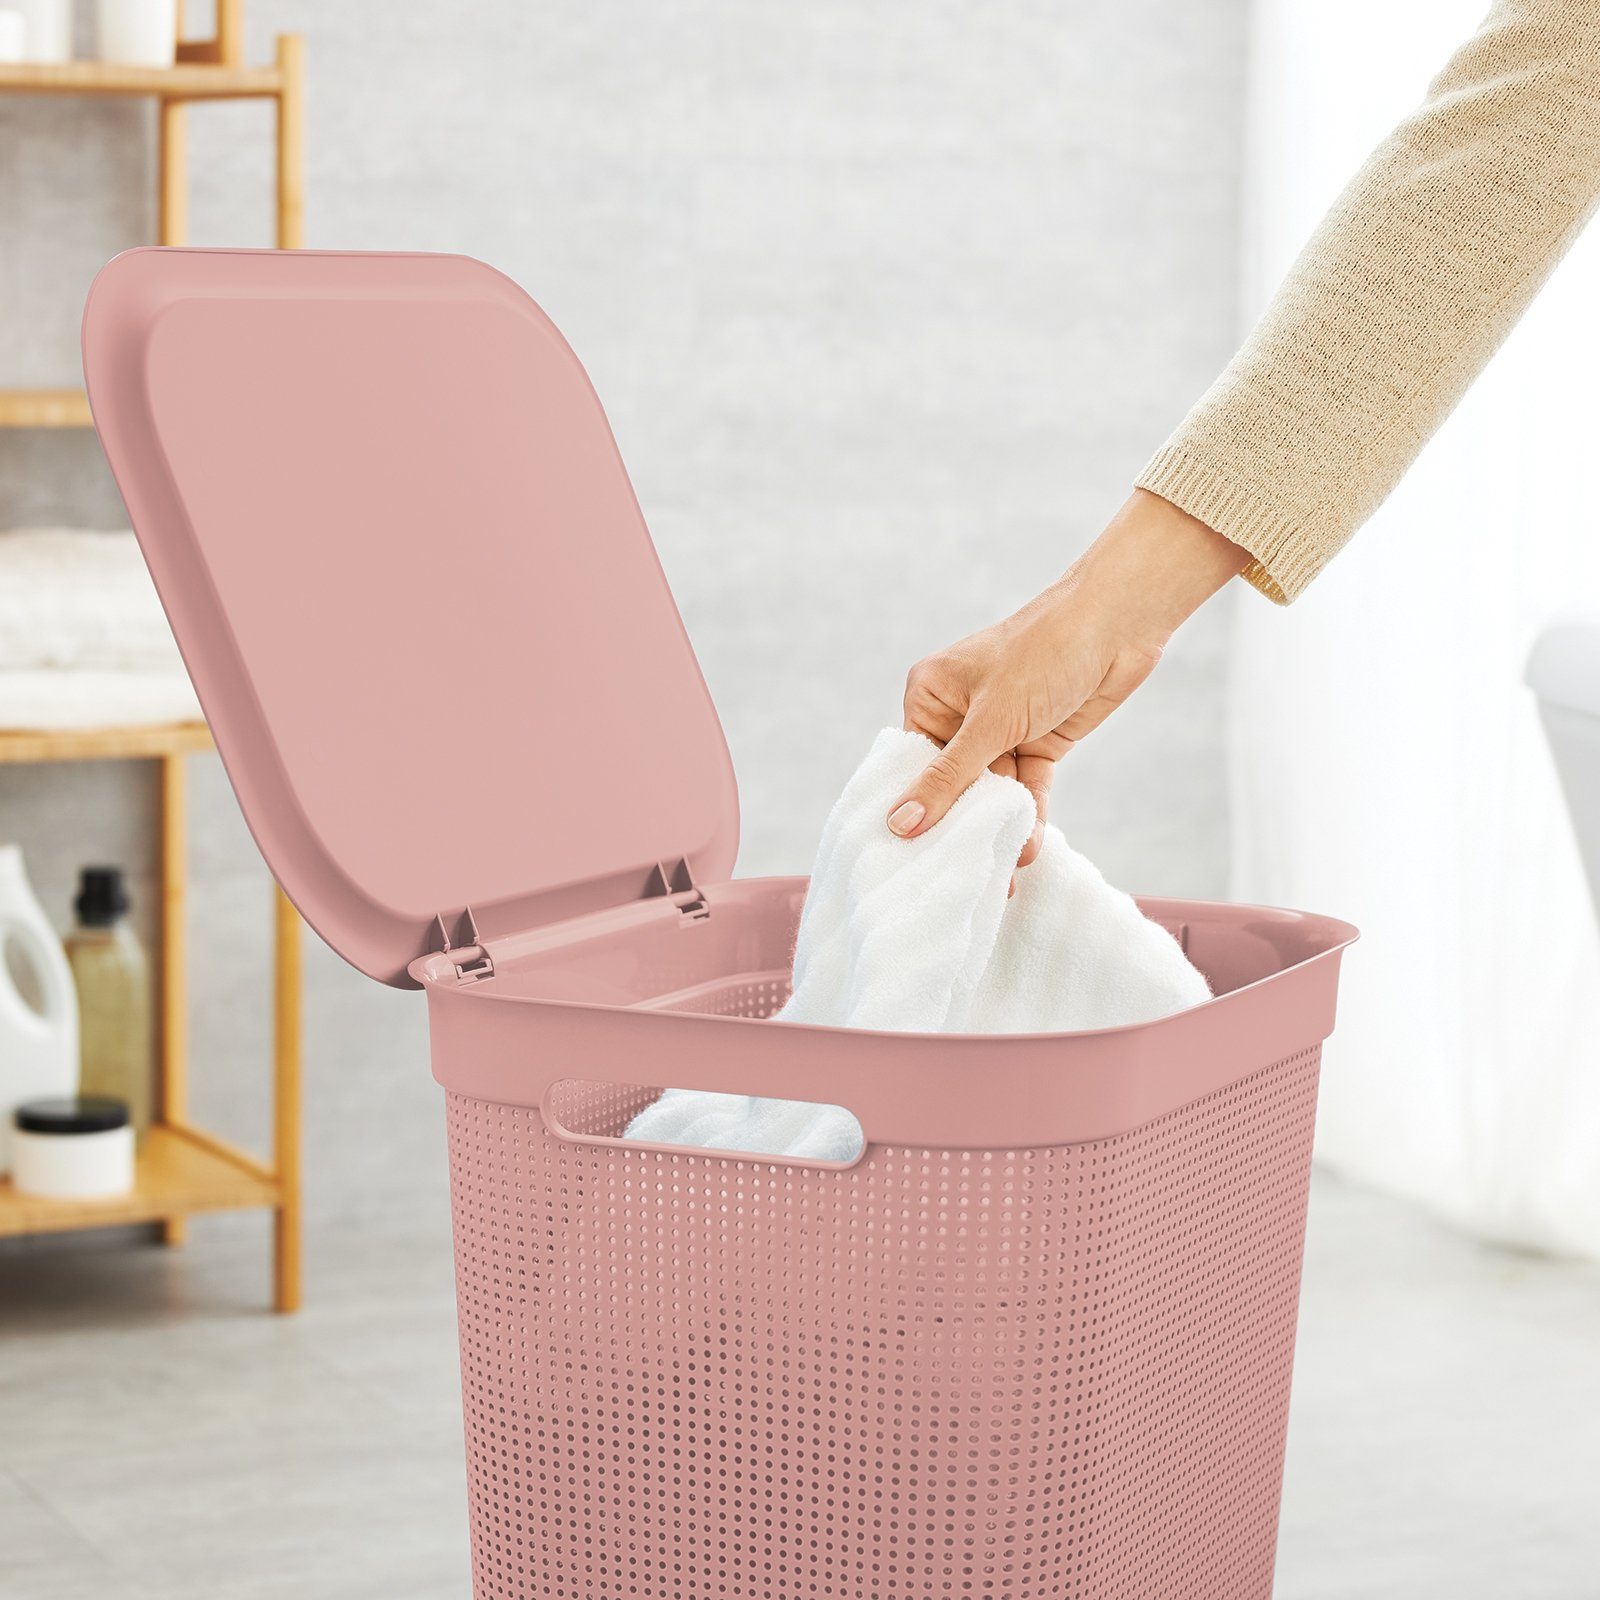 ROTHO Wäschekorb Kunststoff Deckel und (PP) ged. BPA-frei 2 Wäschesammler Linnea pink 2er-Set mit 50l Brisen Griffen